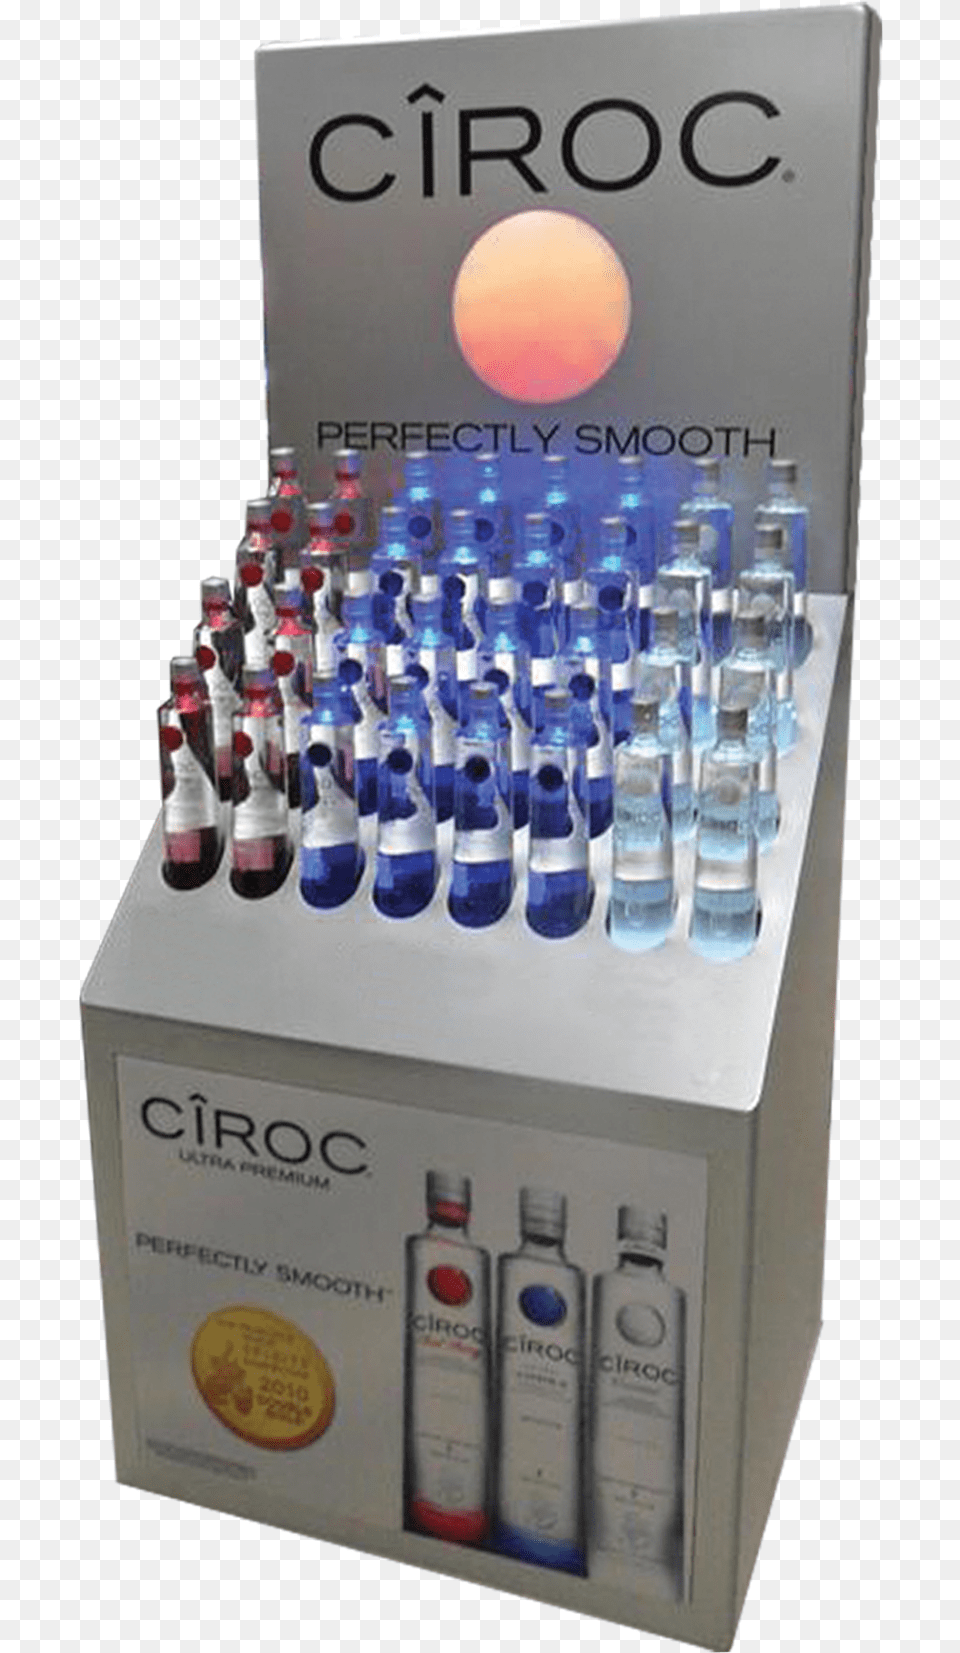 Ciroc Led Display Vending Machine, Bottle, Beverage Png Image